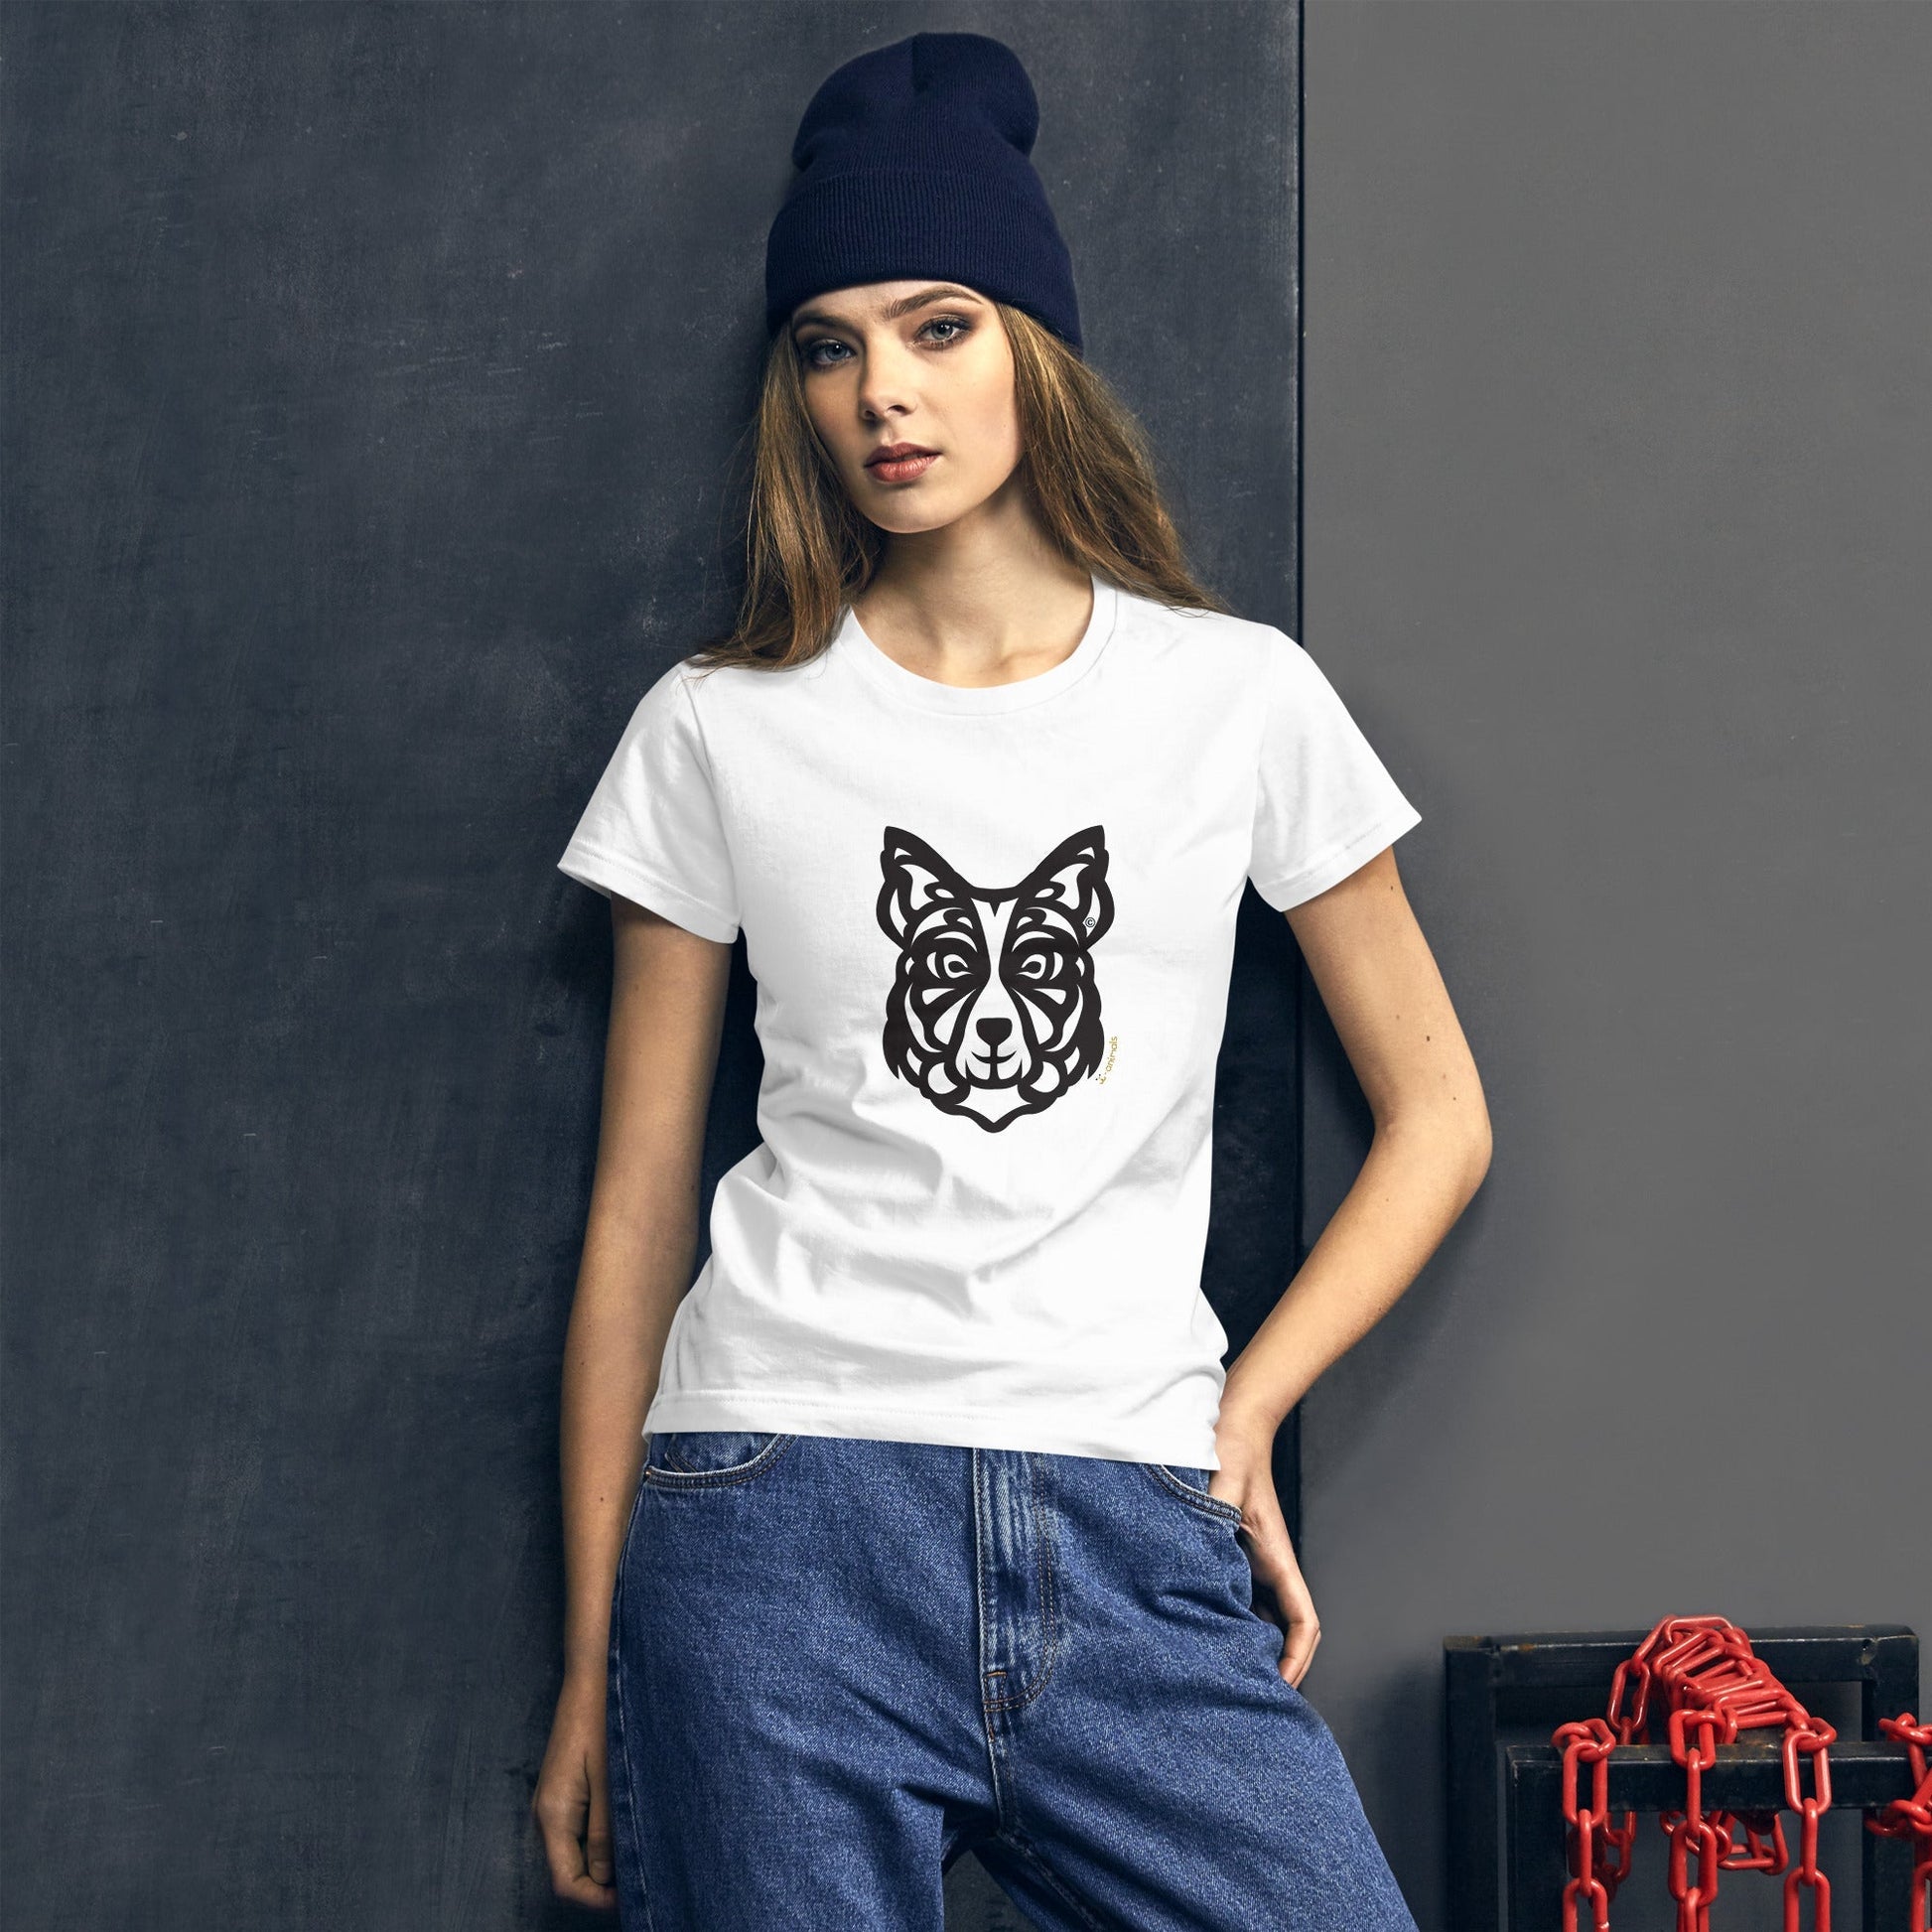 Camiseta feminina de manga curta - Border Collie - Tribal - Cores Claras i-animals